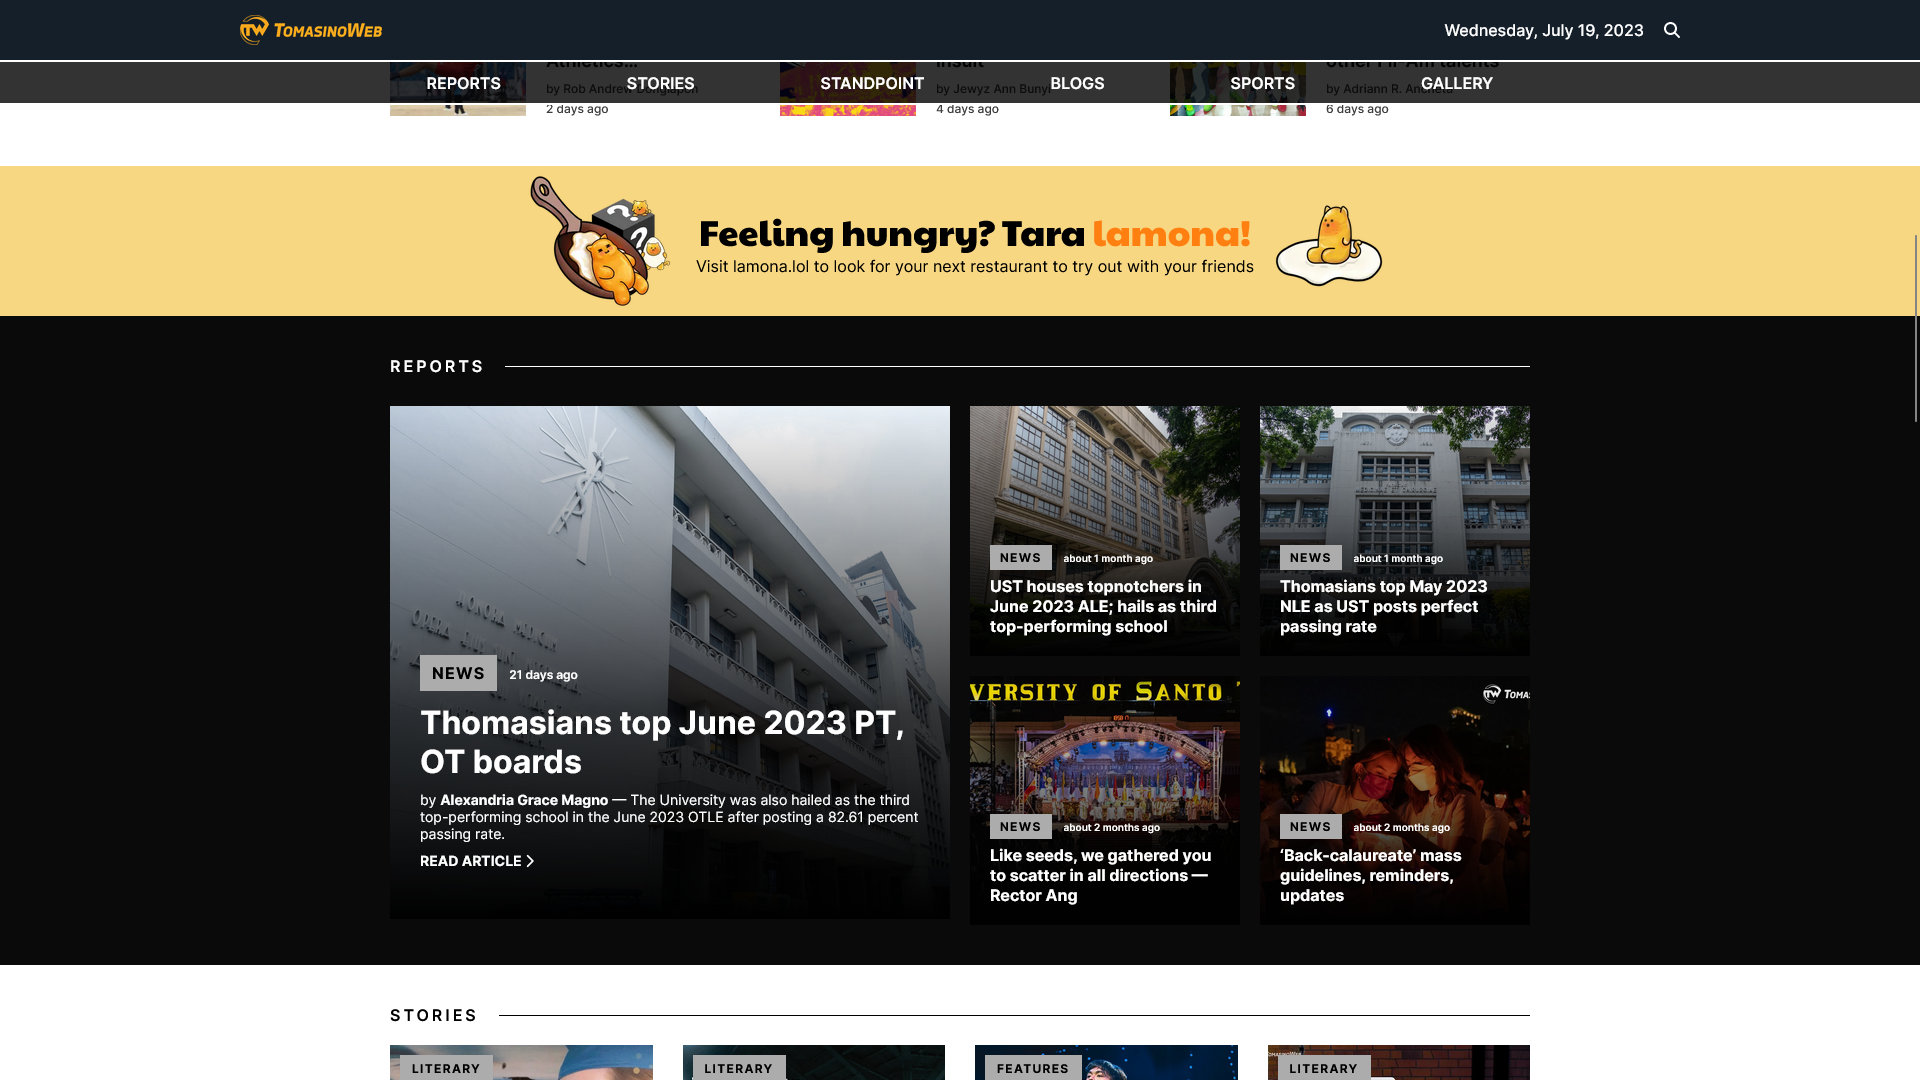 TomasinoWeb.org landing page